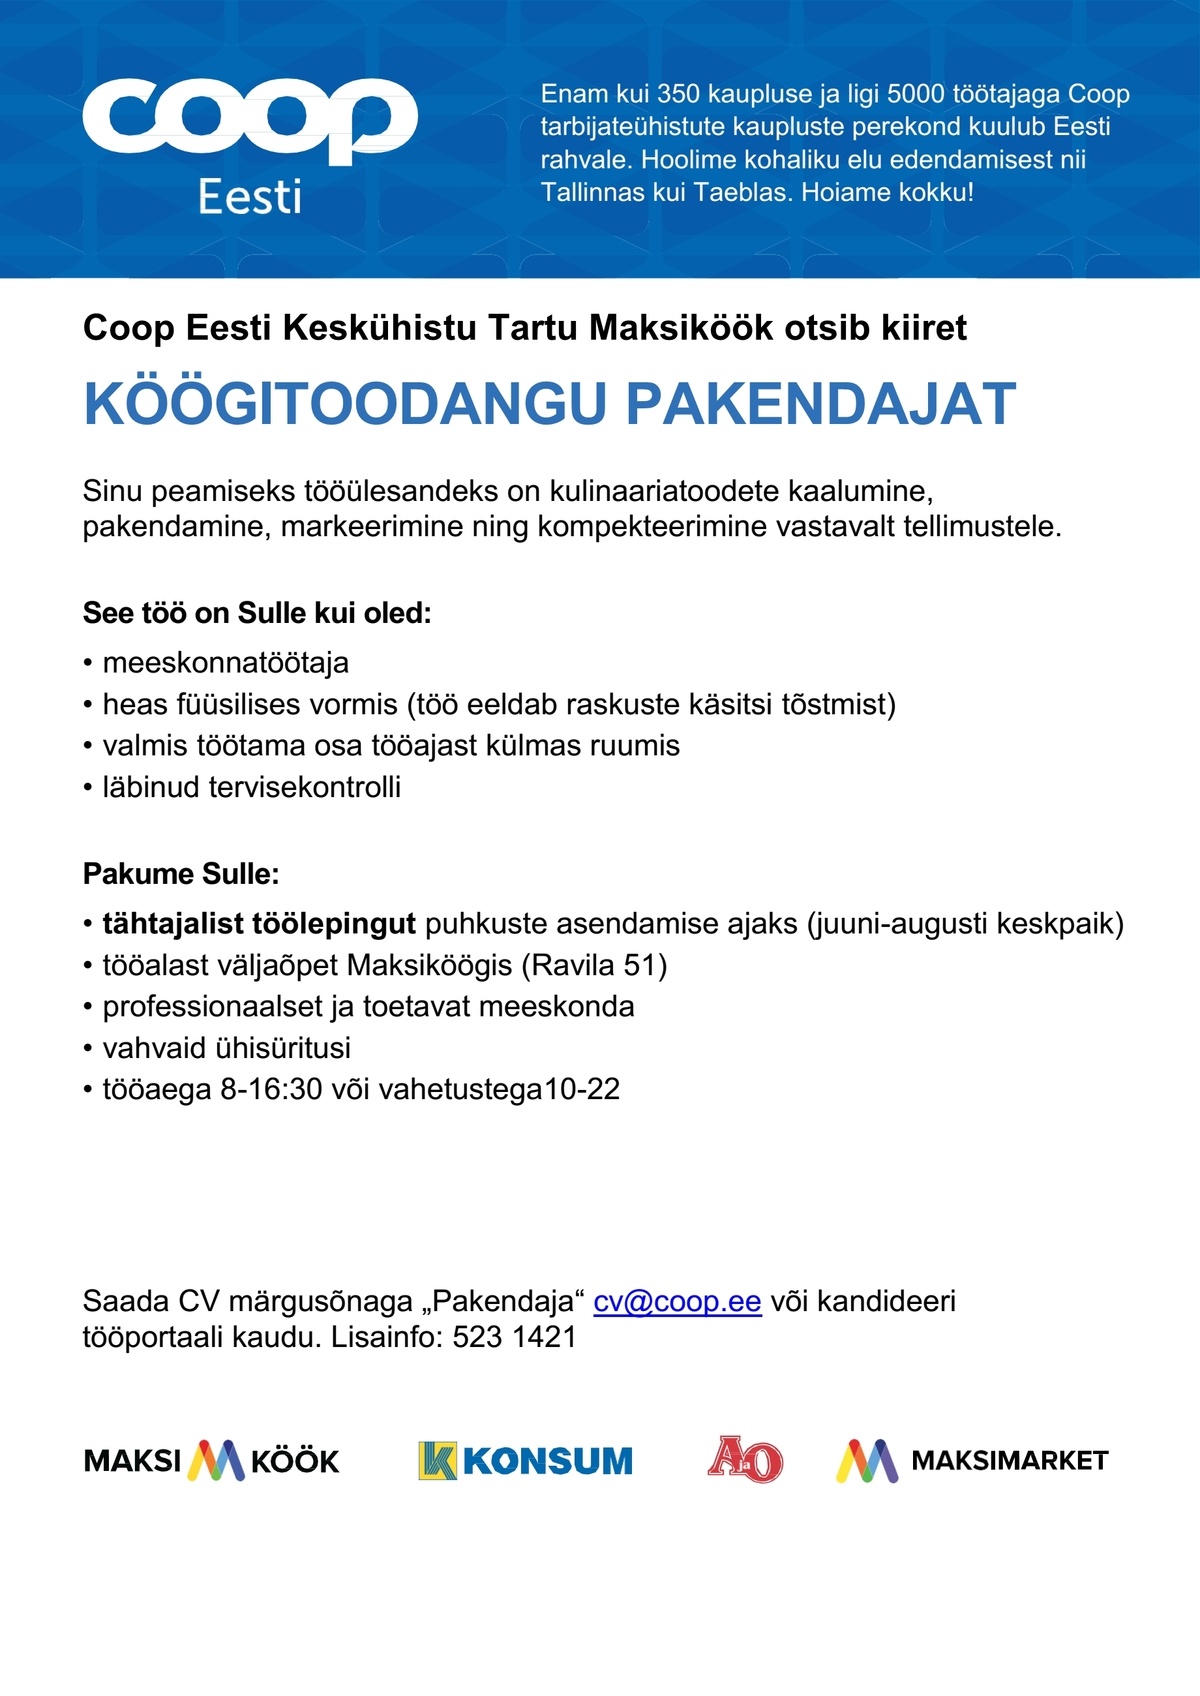 Coop Eesti Keskühistu Pakendaja (Maksiköök - tähtajaline)